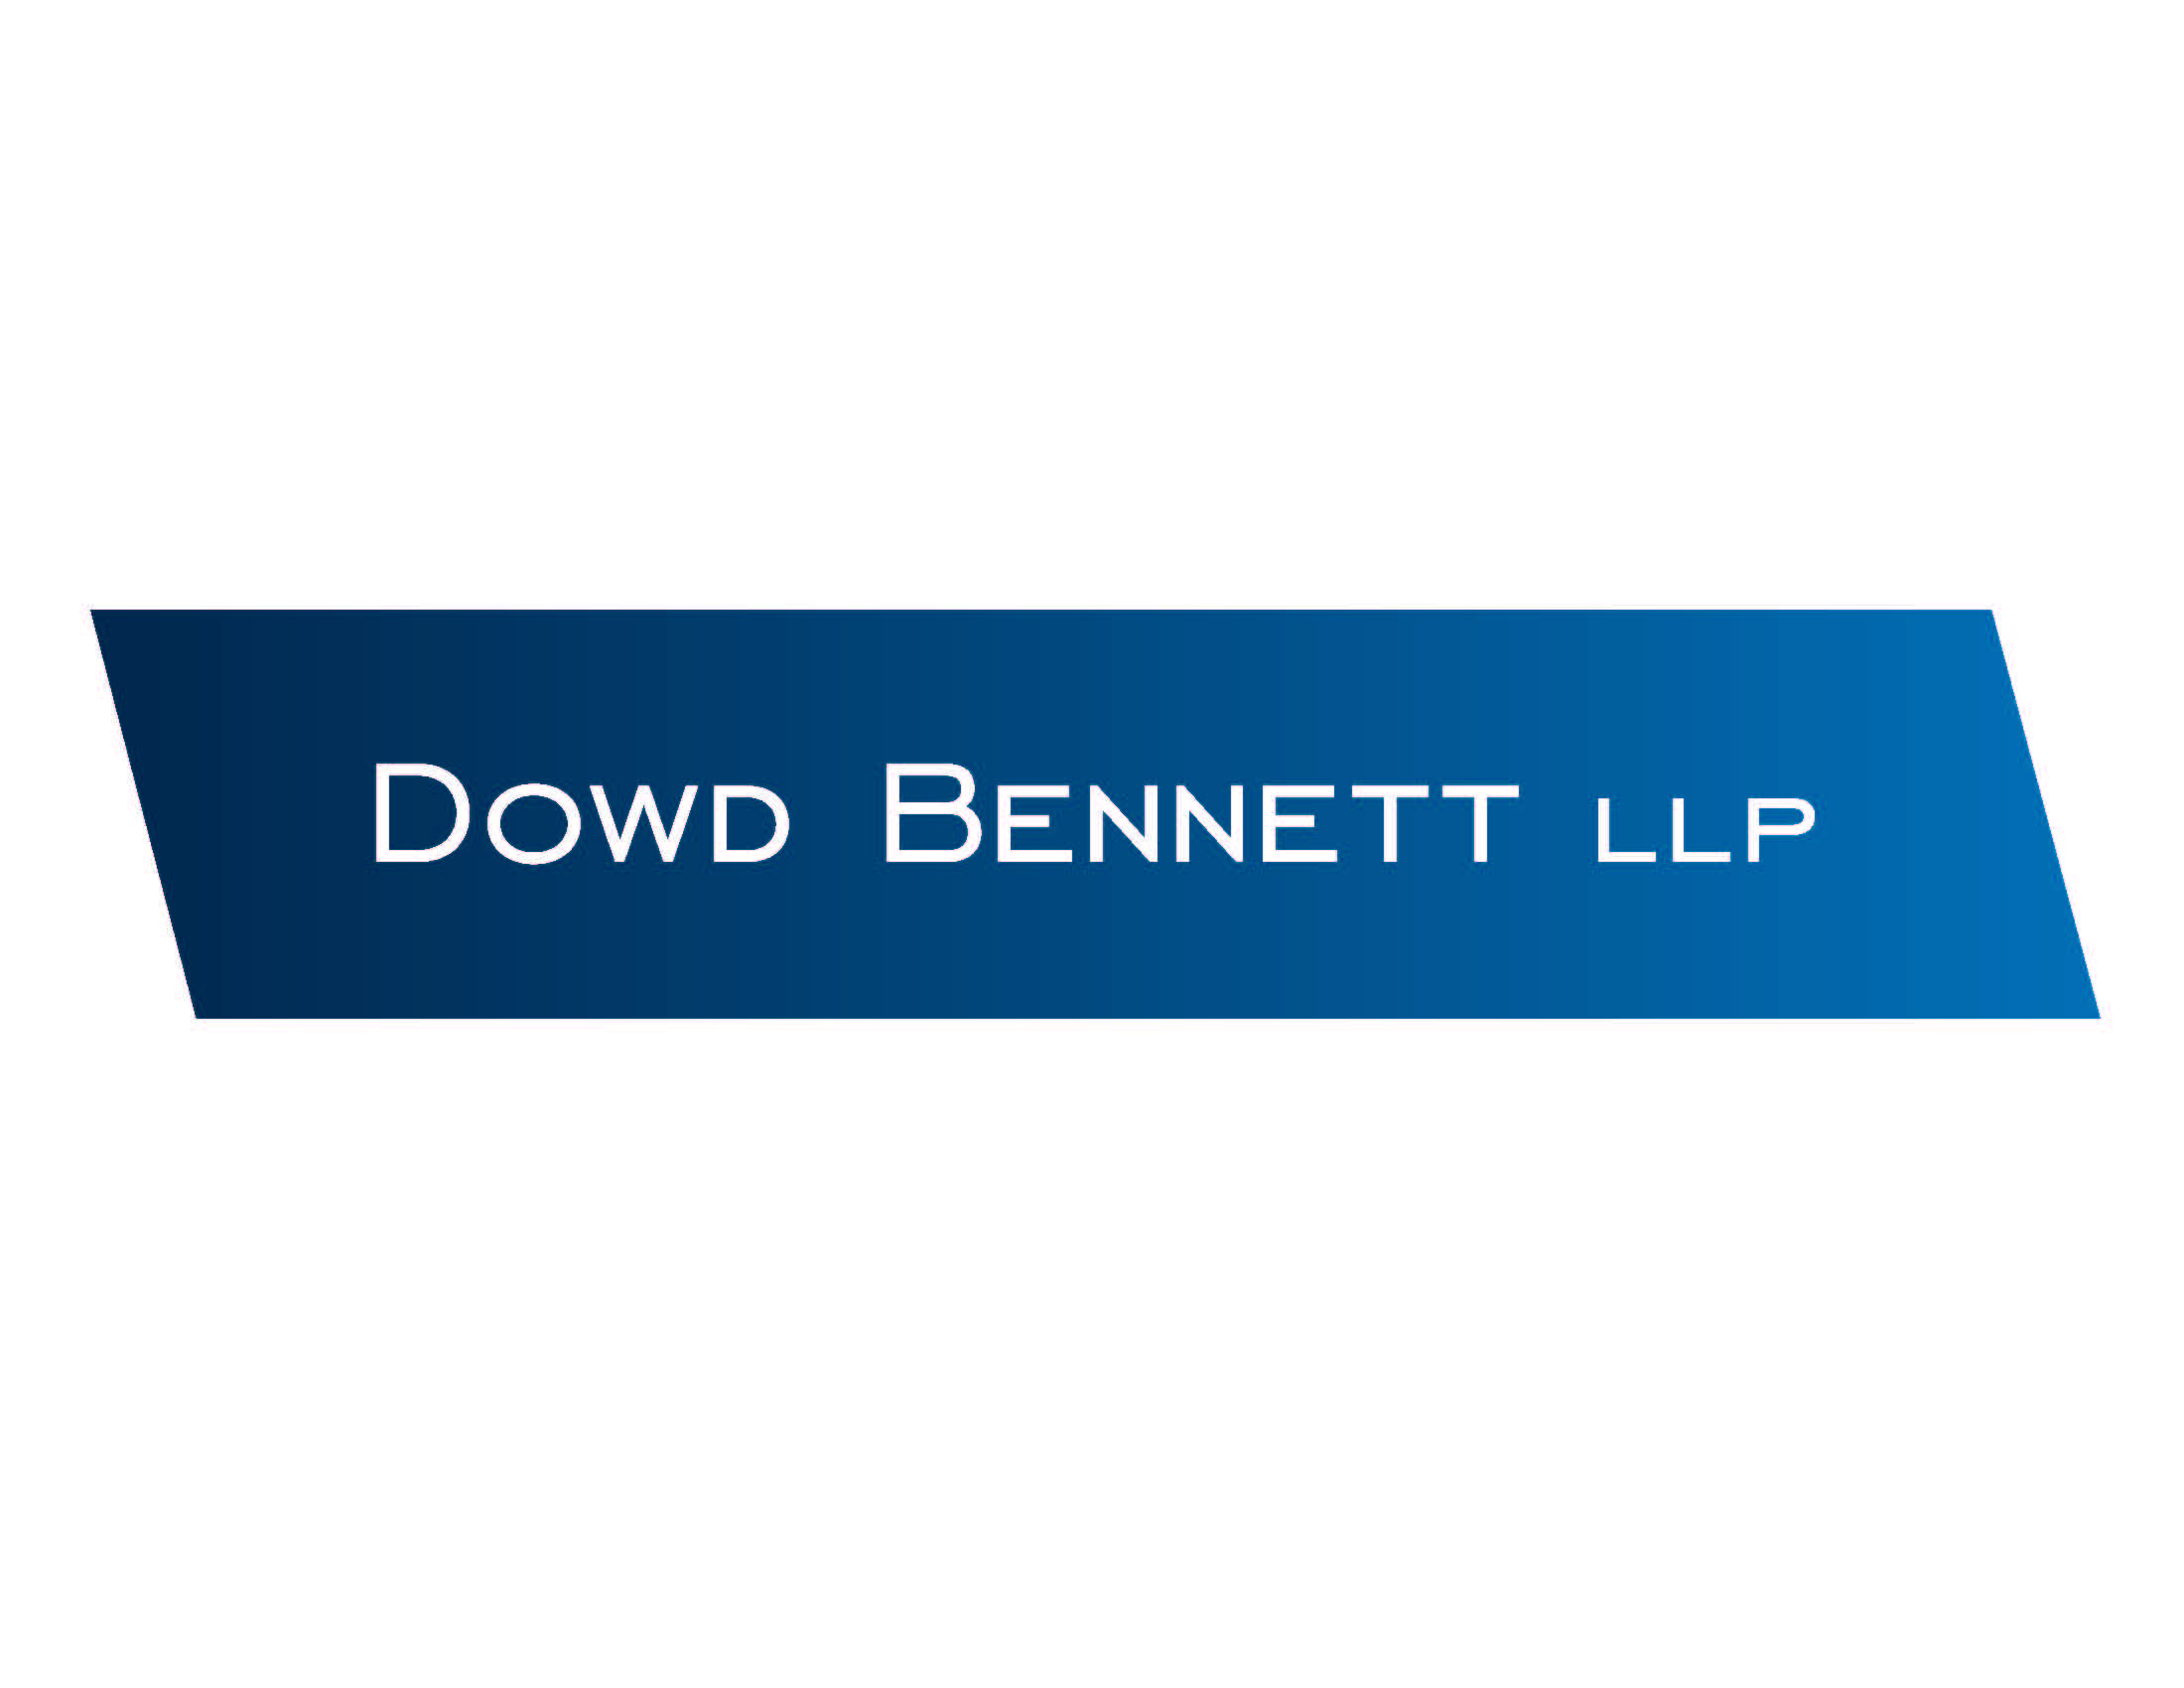 James (Jim) Bennett and Edward L. Dowd, Jr., Dowd Bennett LLP Fund